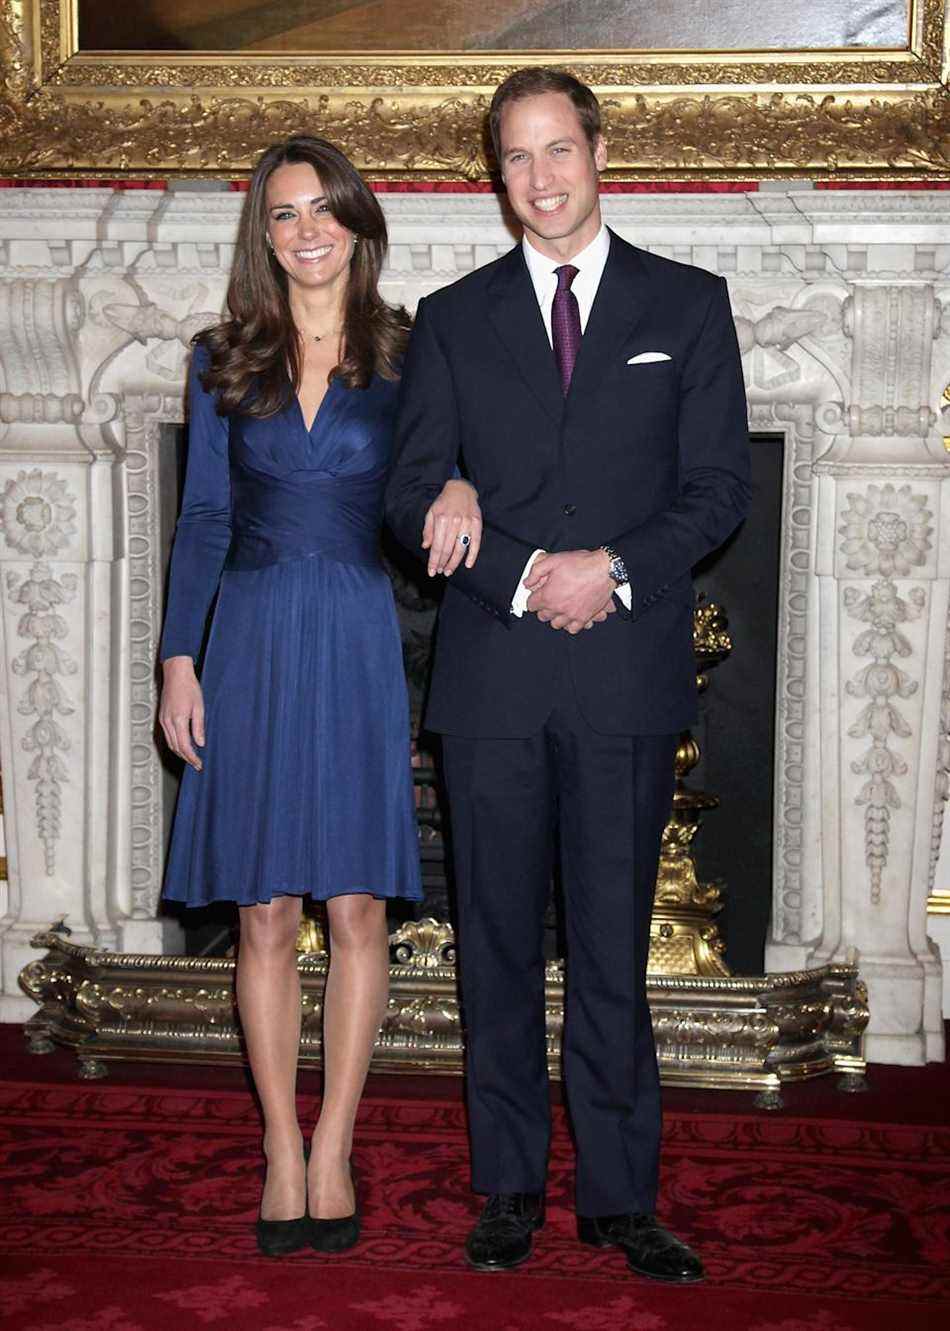 Kate Middleton, comme on l'appelait alors, et le prince William posent pour des photos à l'occasion de leurs fiançailles le 16 novembre 2010. (Getty Images)